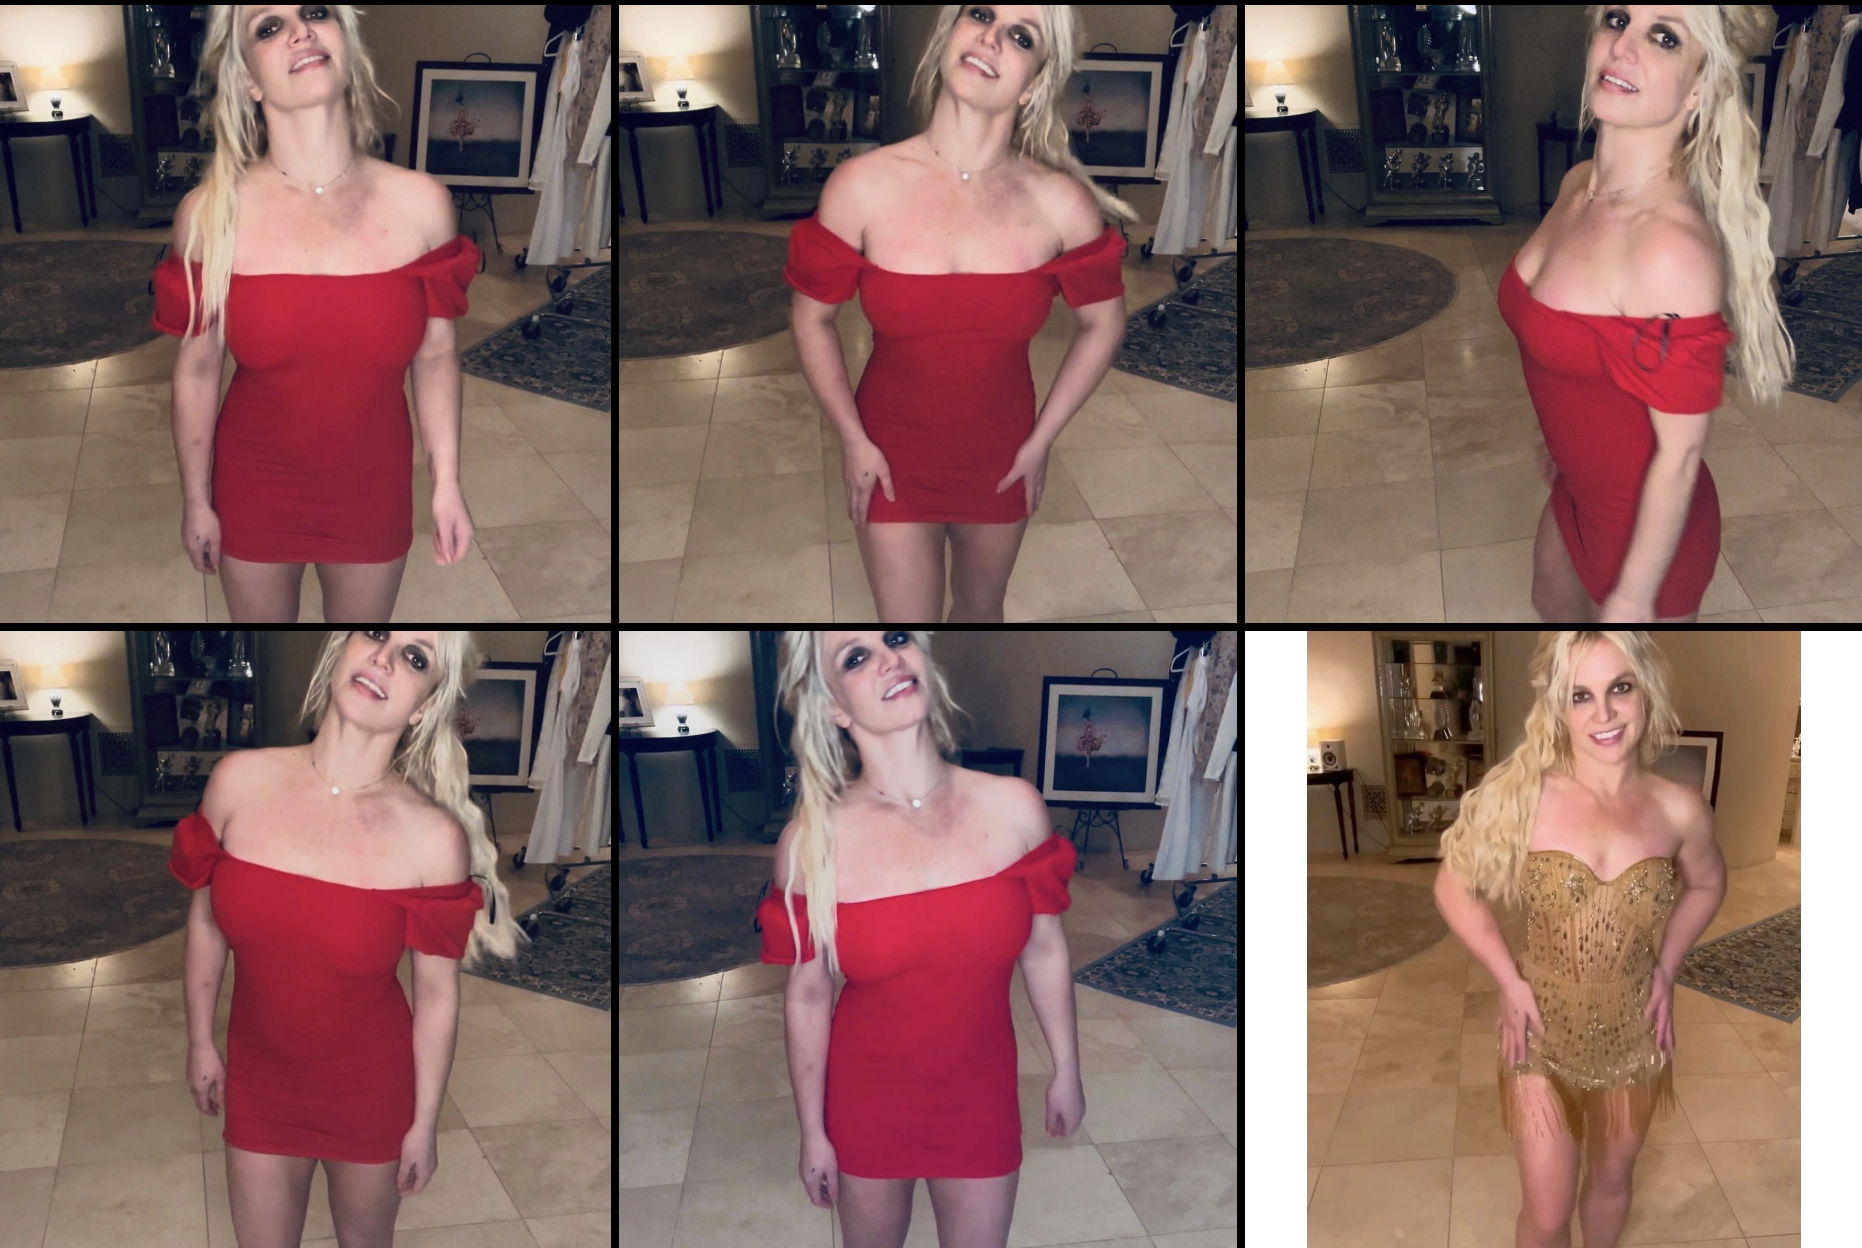 Britney Spears zrzut zdjęć z instagrama